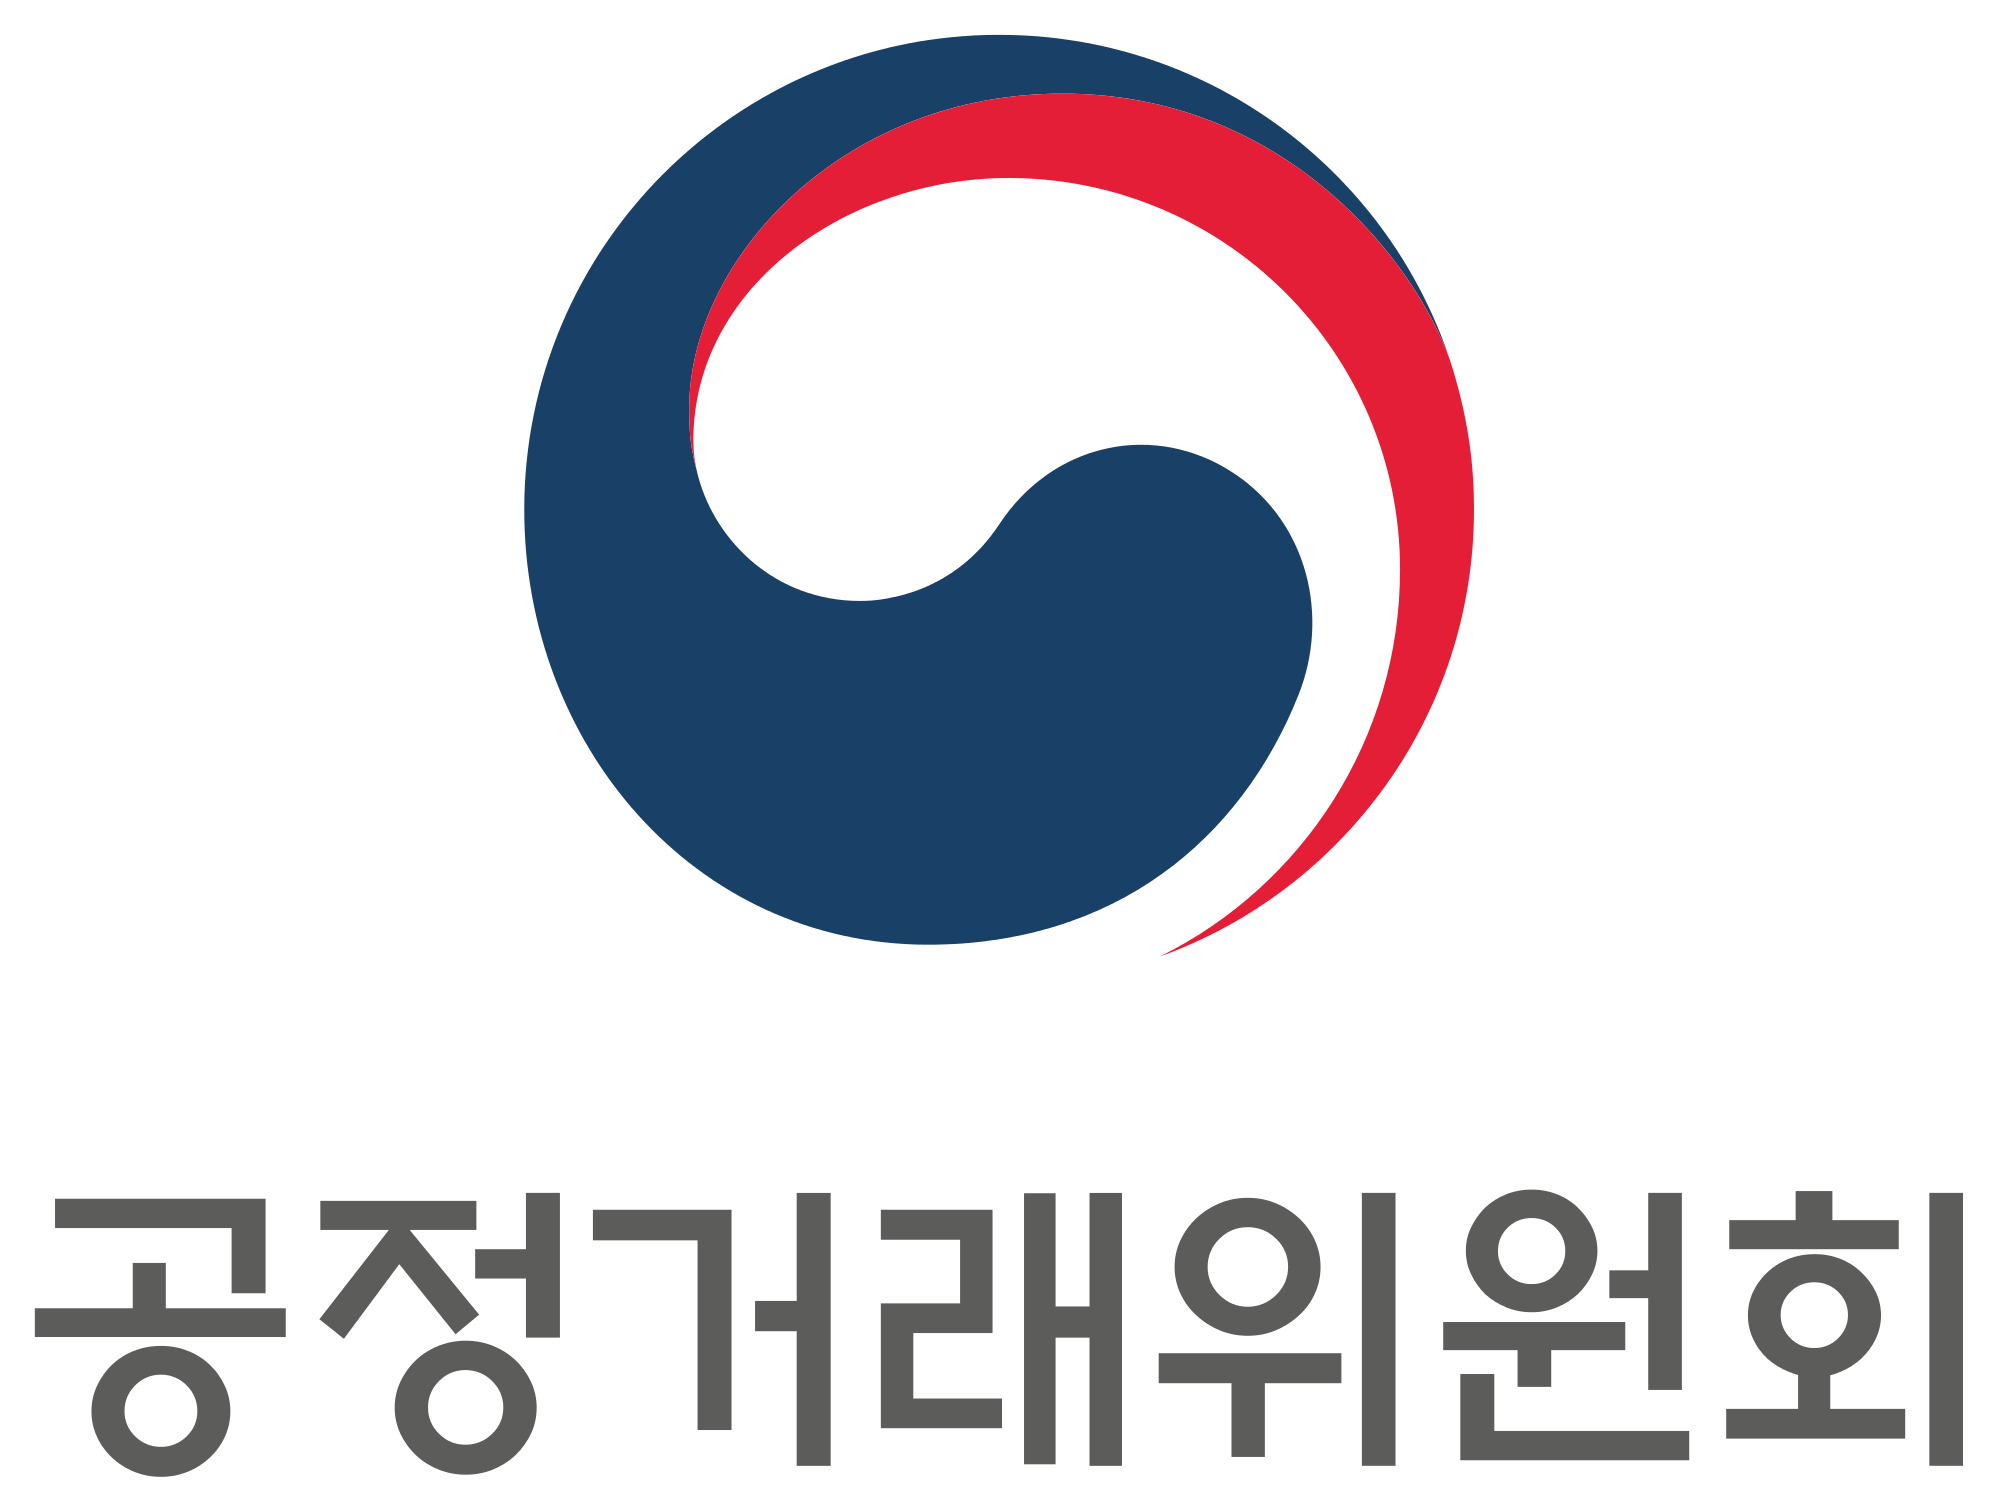 South Korean Logo - Emblem of the Korea Fair Trade Commission (South Korea) (Korean